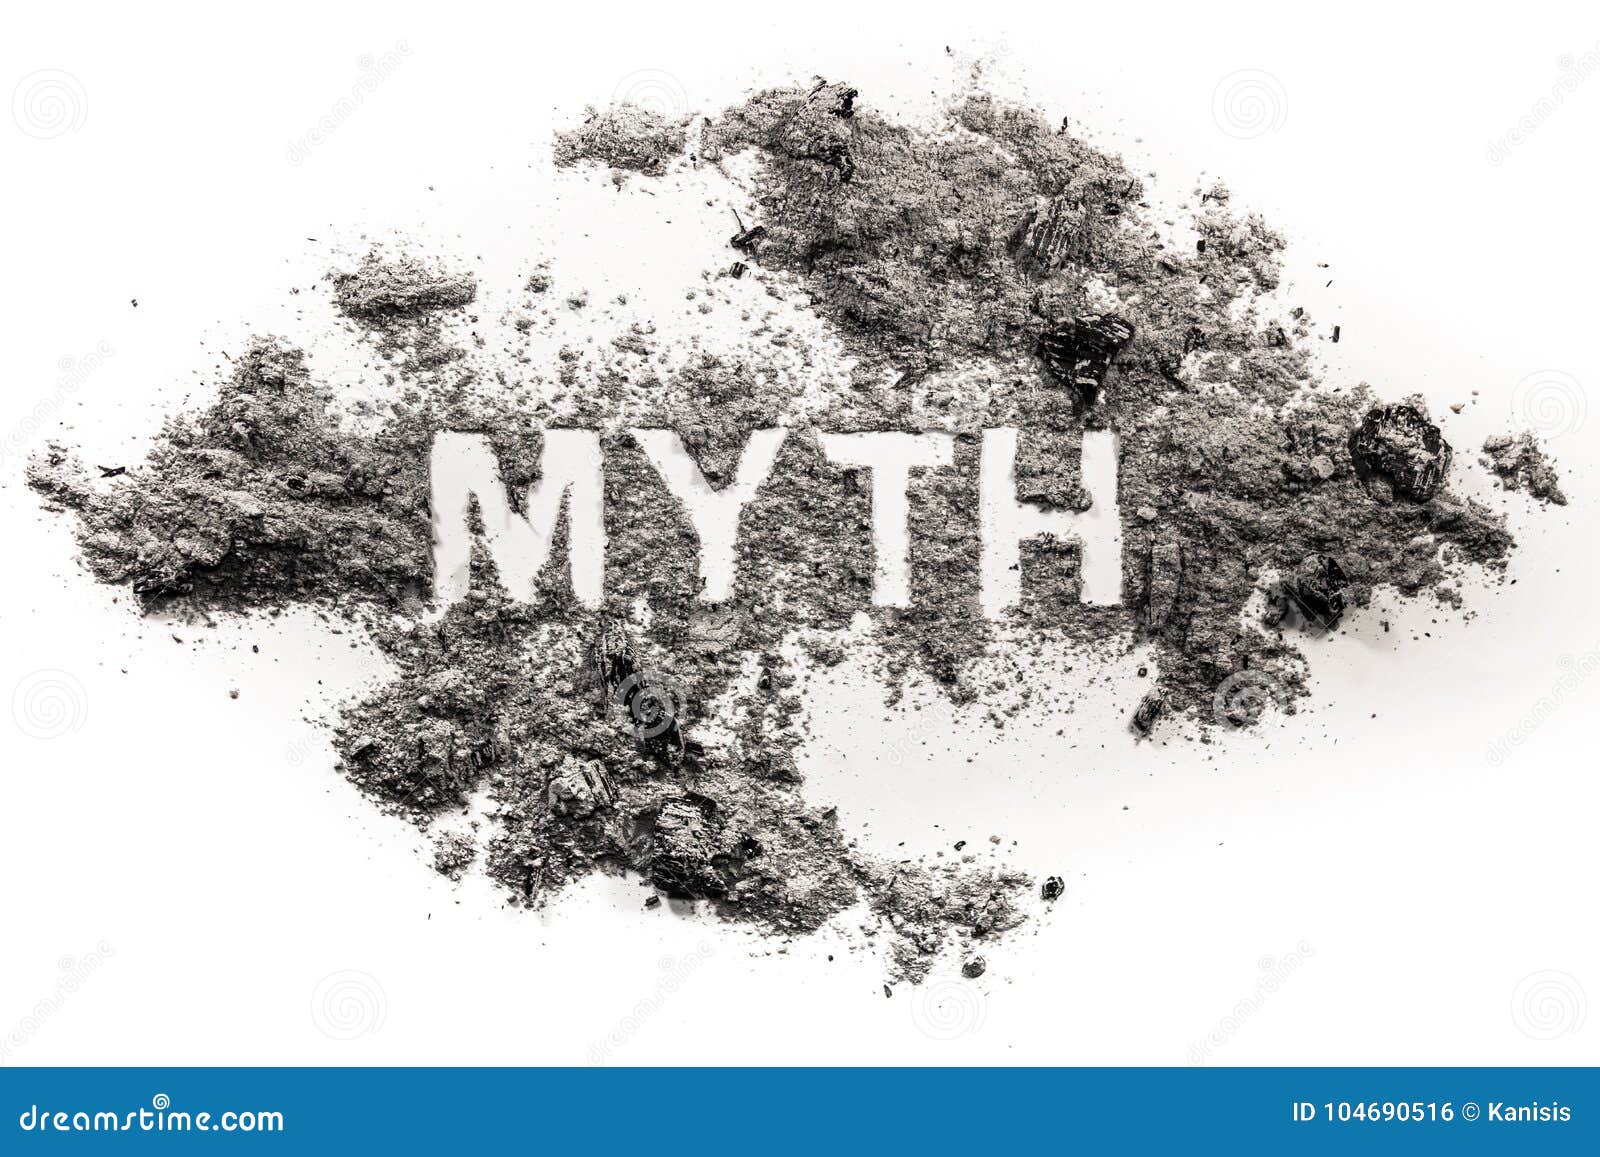 myth word written in ash or dust